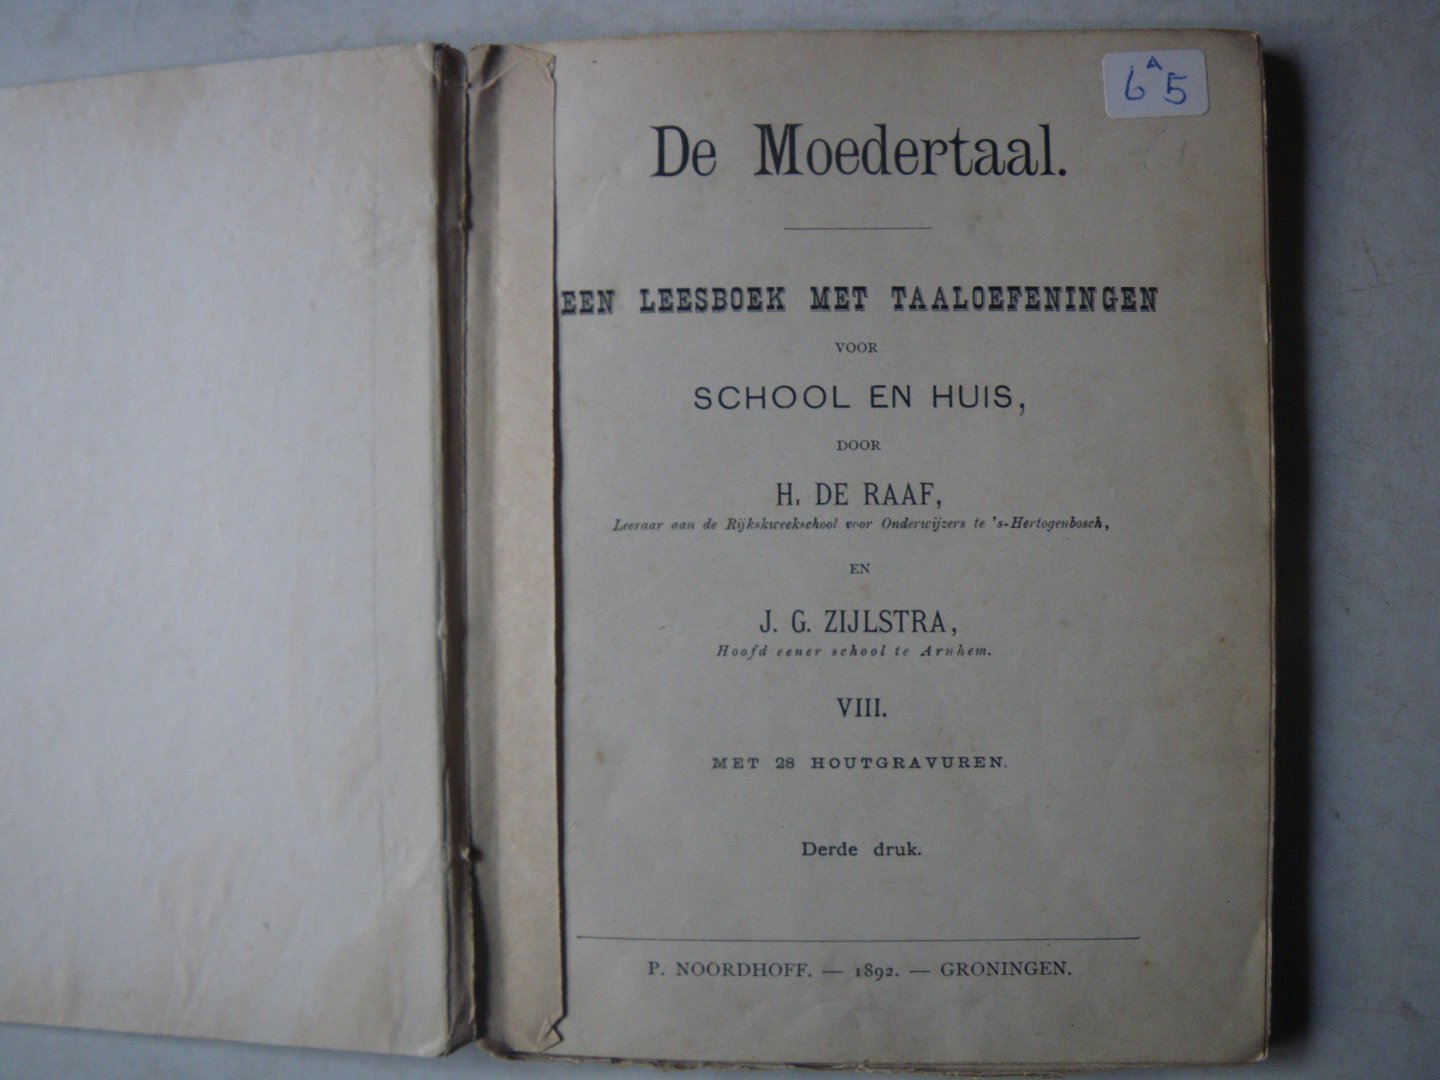 Raaf, H. de, Zijlstra, J.G. - De moedertaal : een leesboek met taaloefeningen voor school en huis. achtste deeltje. derde druk